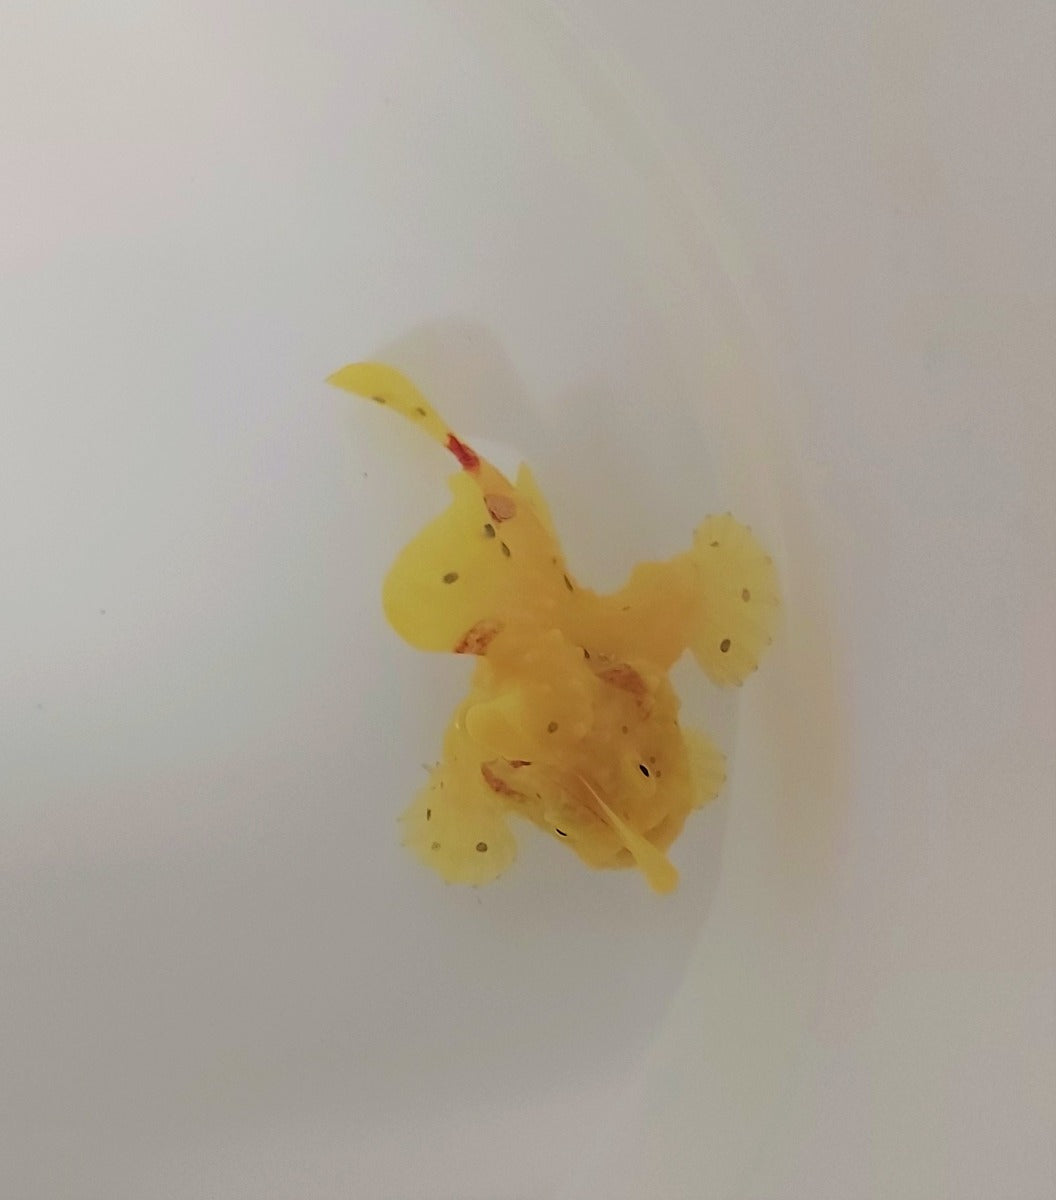 Antennarius sp. (Yellow) - Voelsprietvis